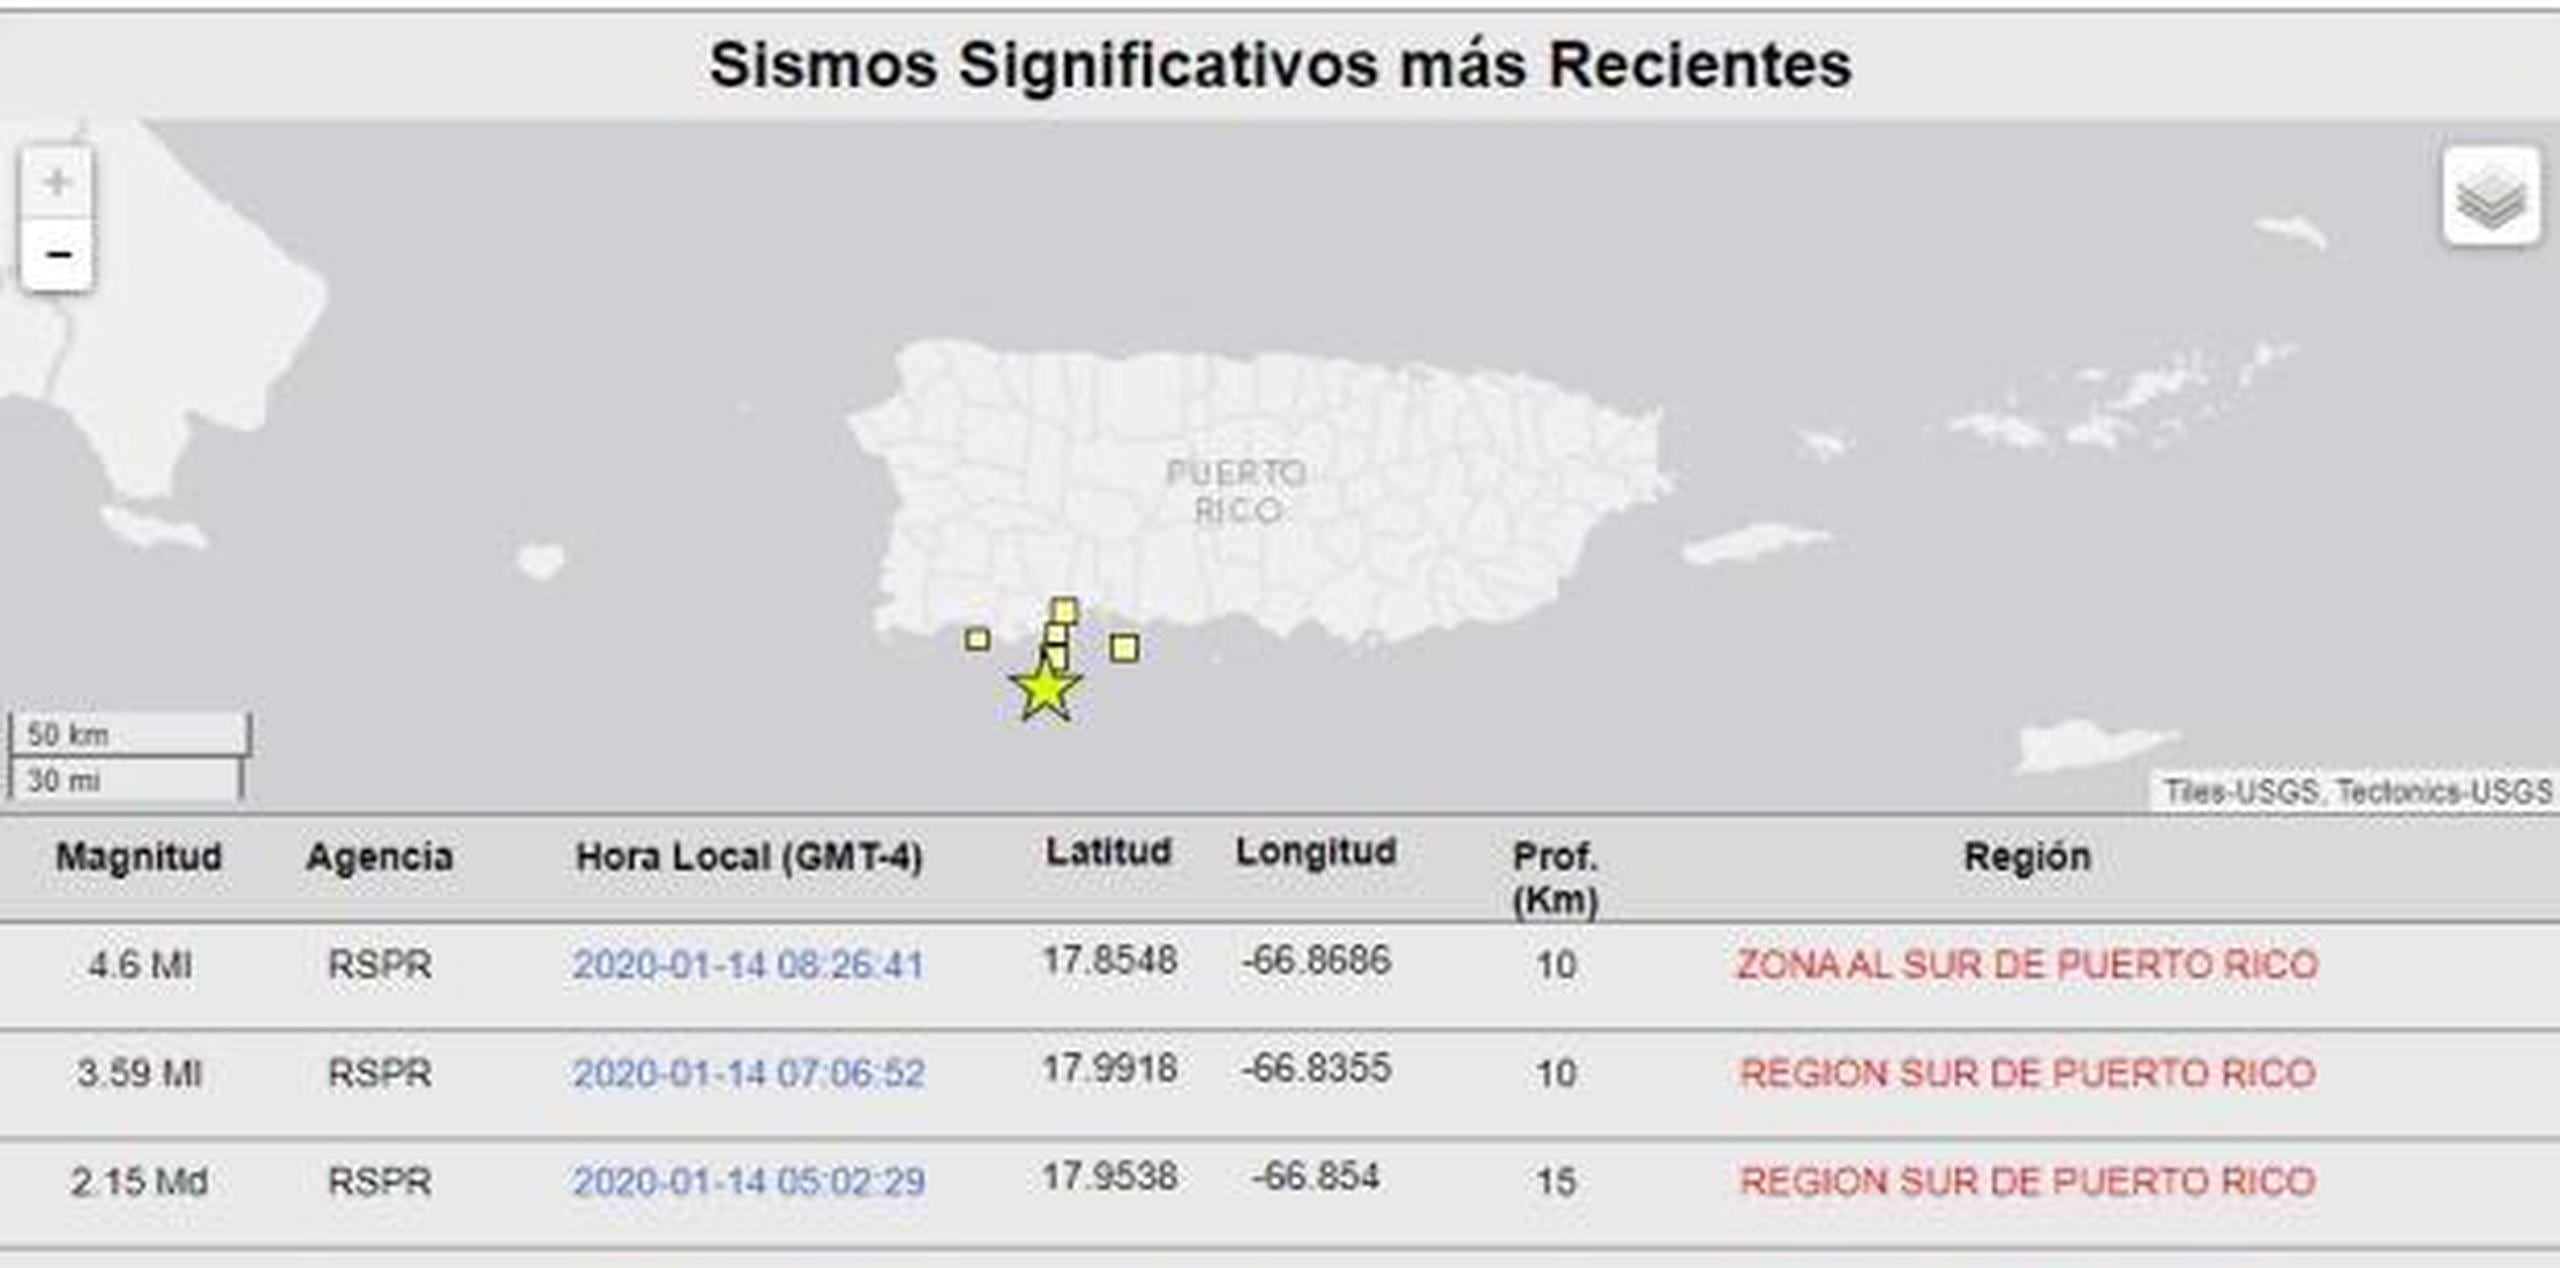 Al sur de Guánica y Guayanilla se concentra el mayor número de sismos. (RSPR)